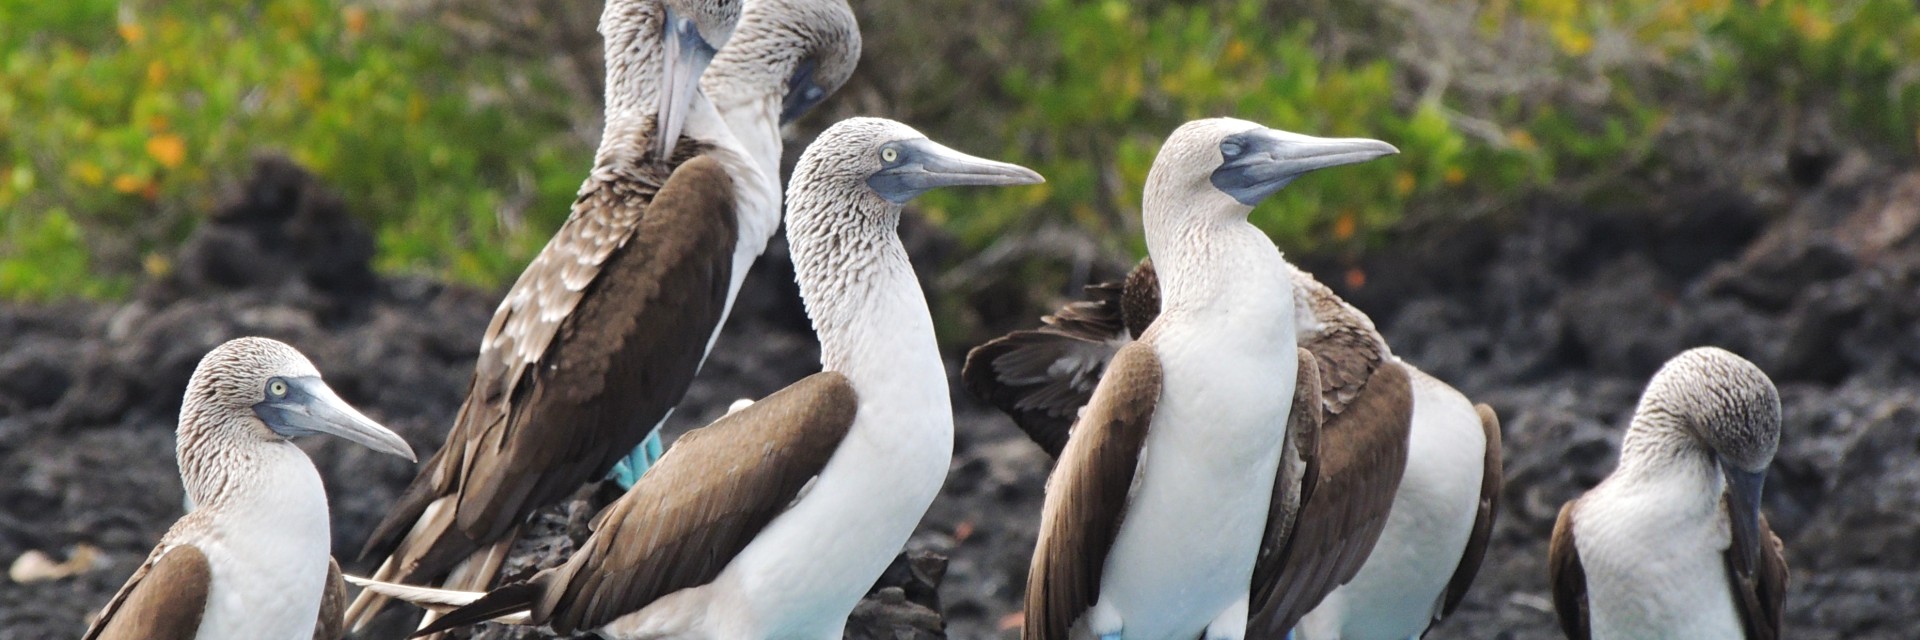 Galapagos sula piediazzurri